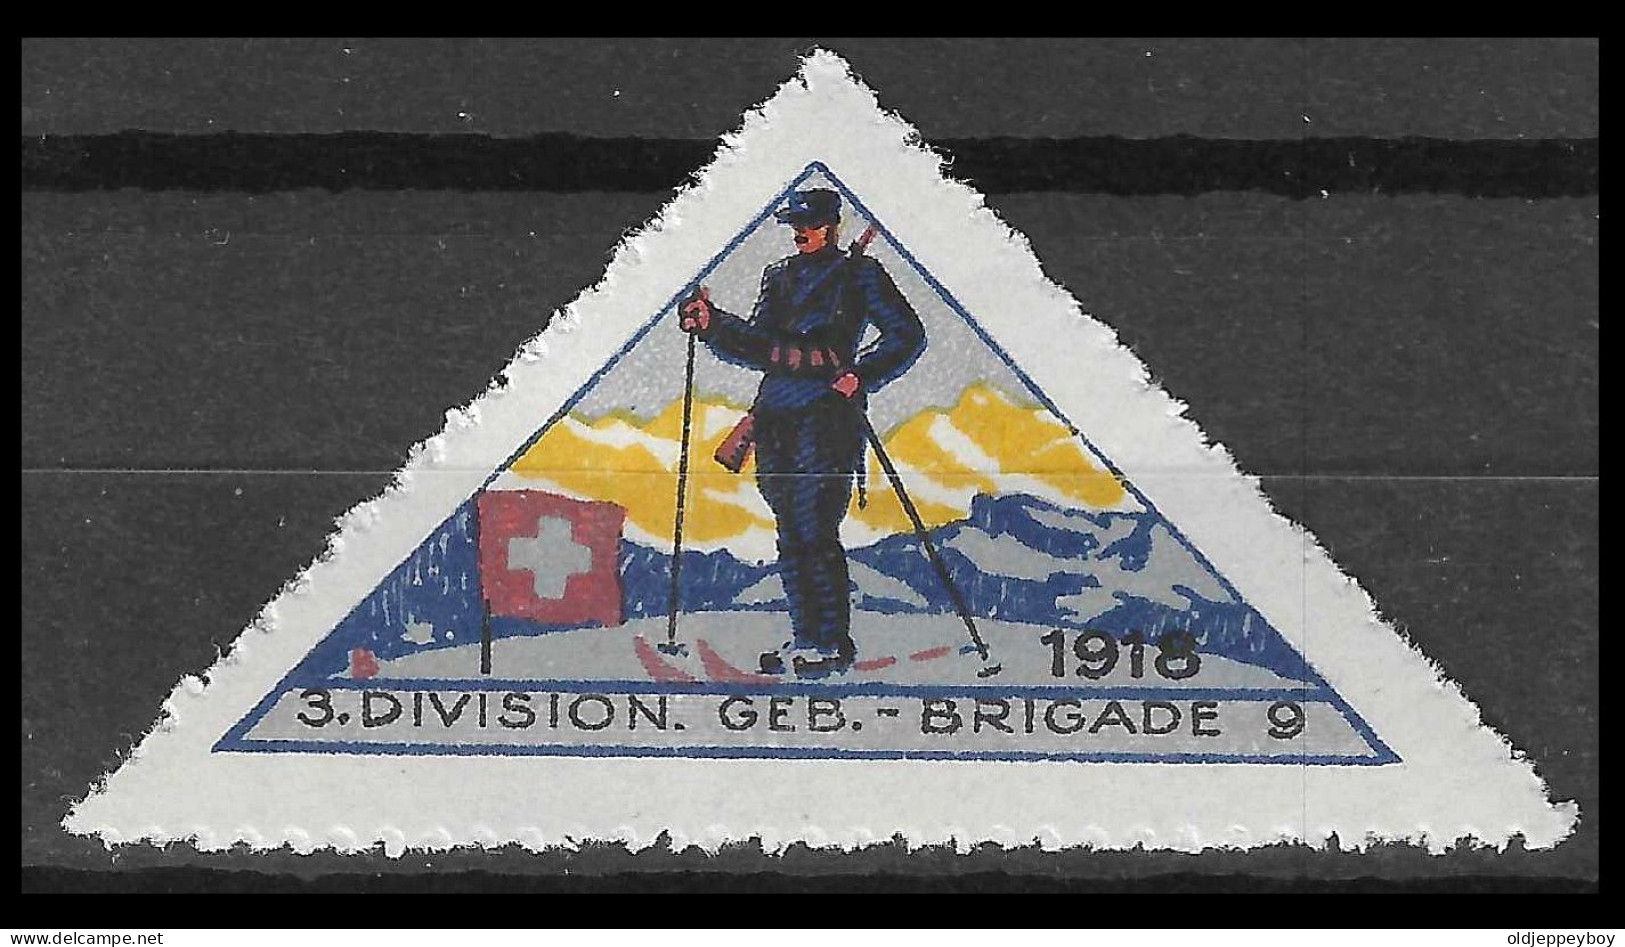 Uisse // Poste Militaire // Vignette-timbre // 1914-1918 // 3.Division ,Geb.-Brigade 9 No.135 - Vignettes